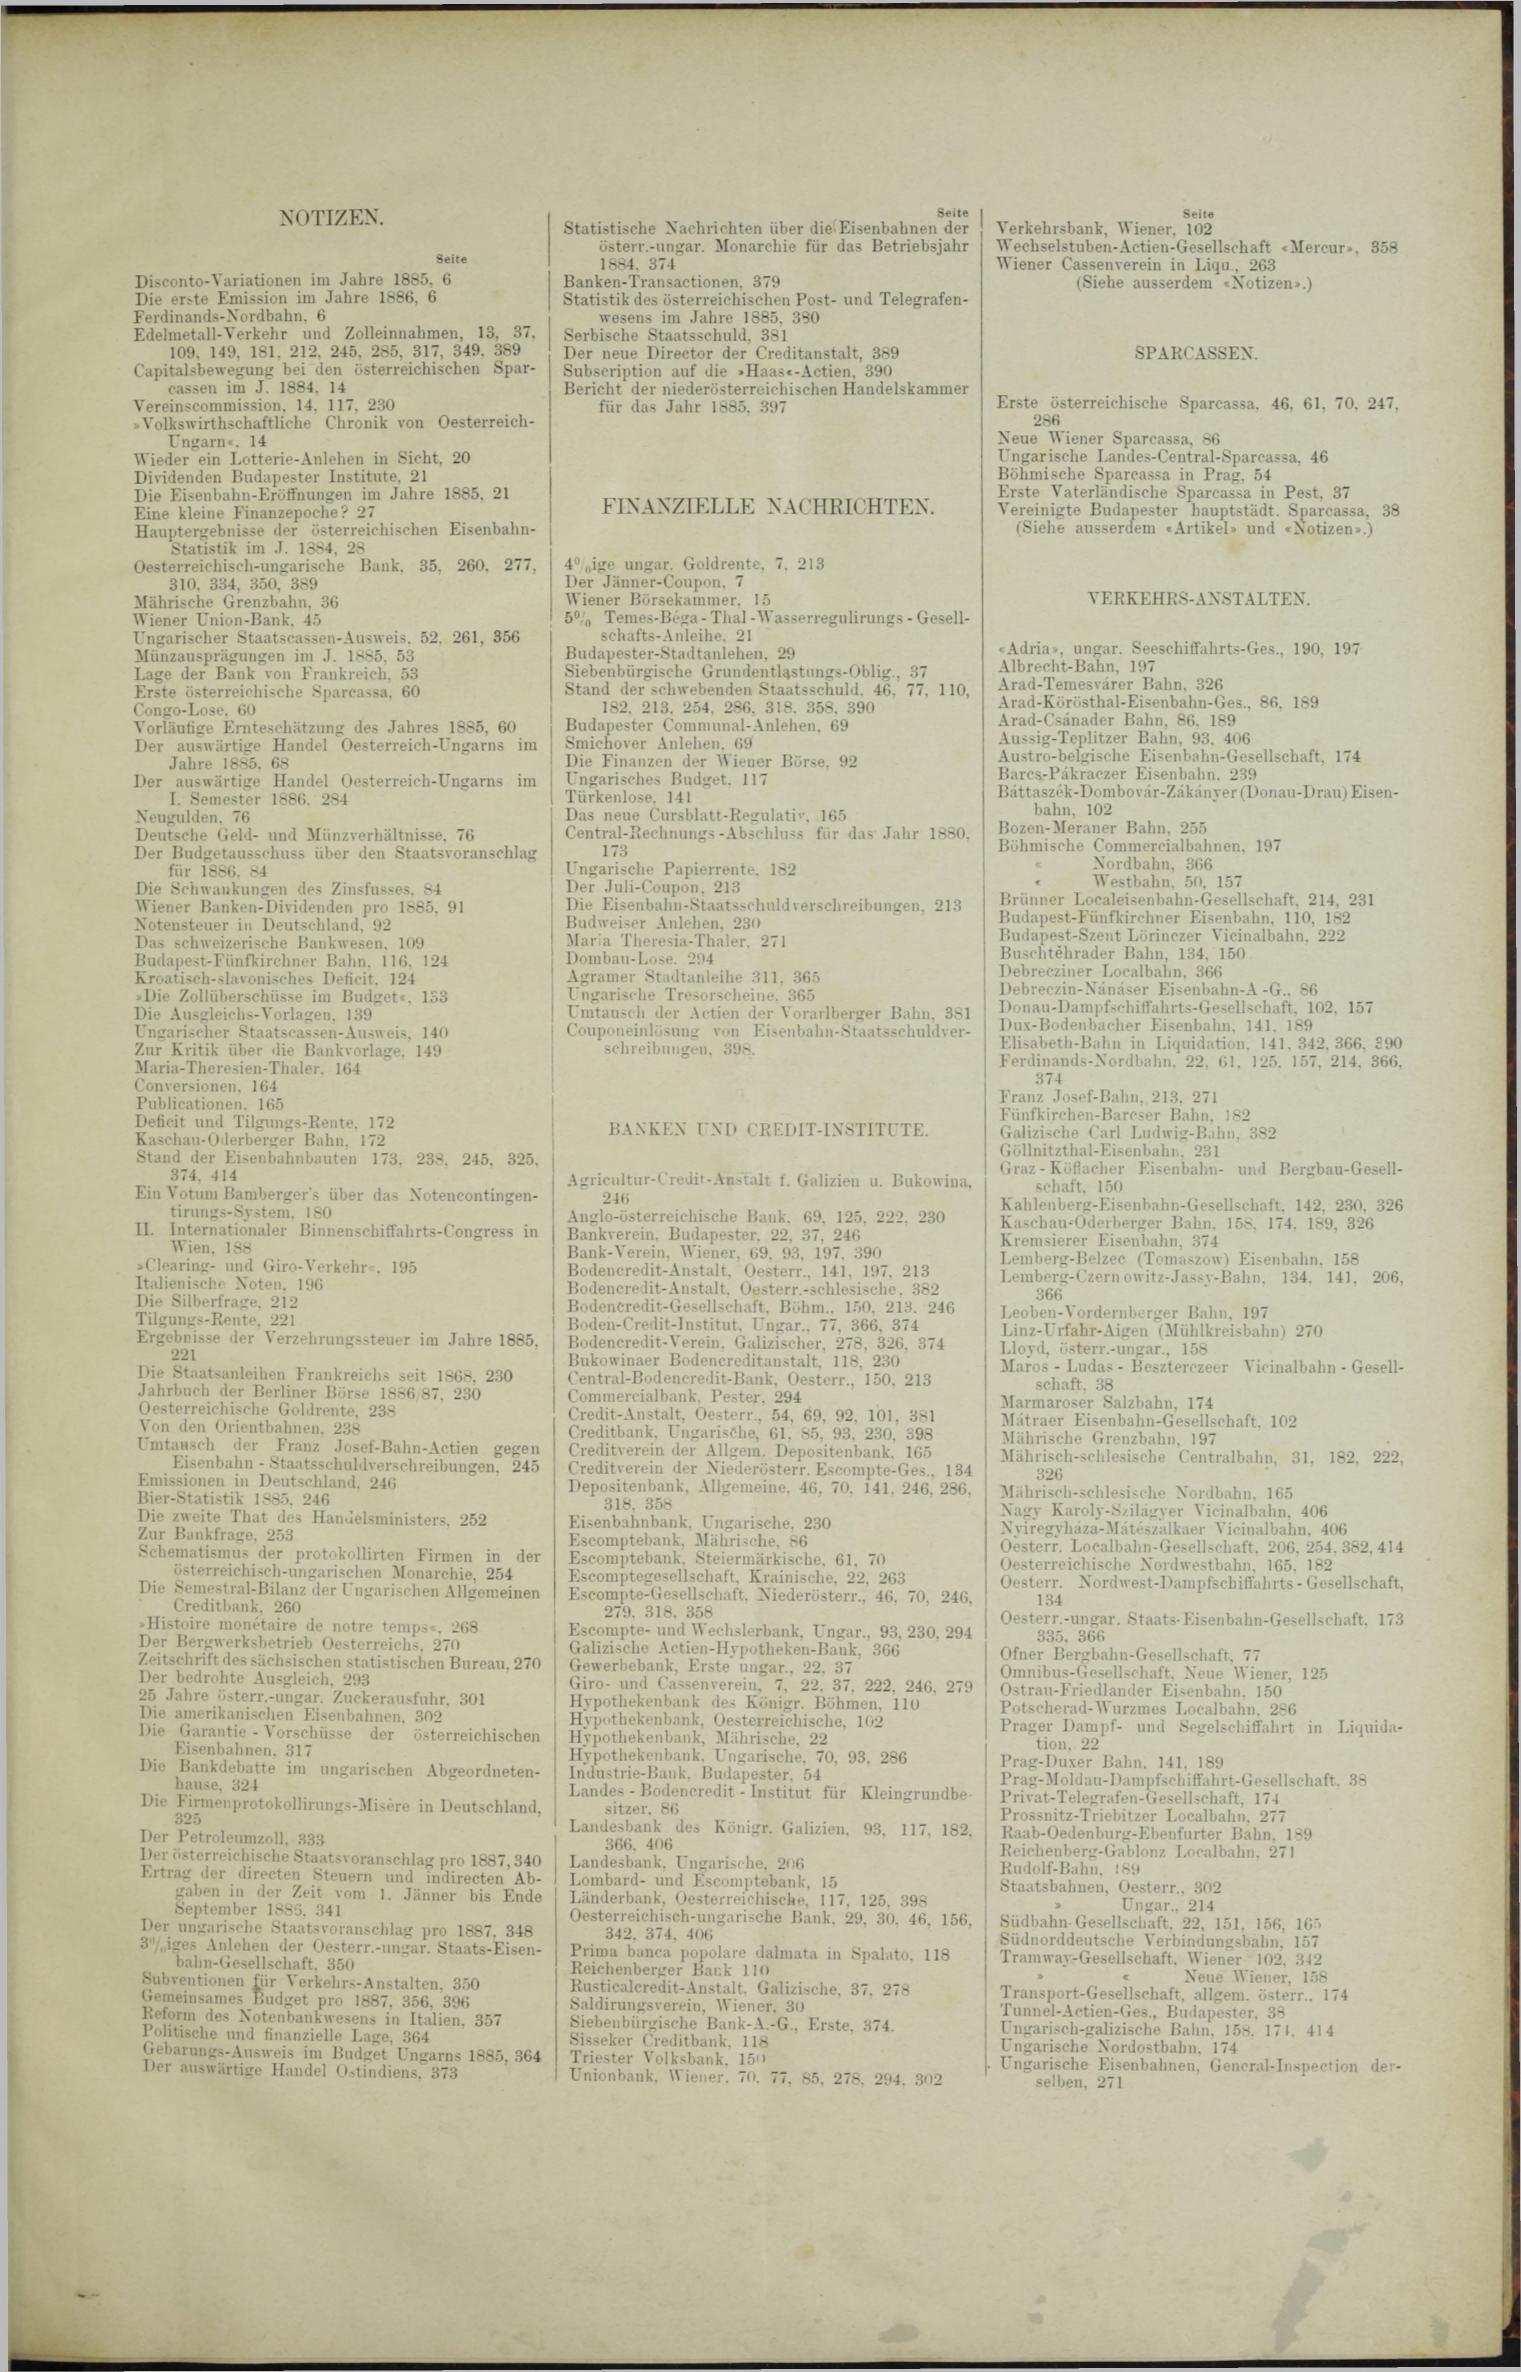 Der Tresor 01.04.1886 - Seite 11